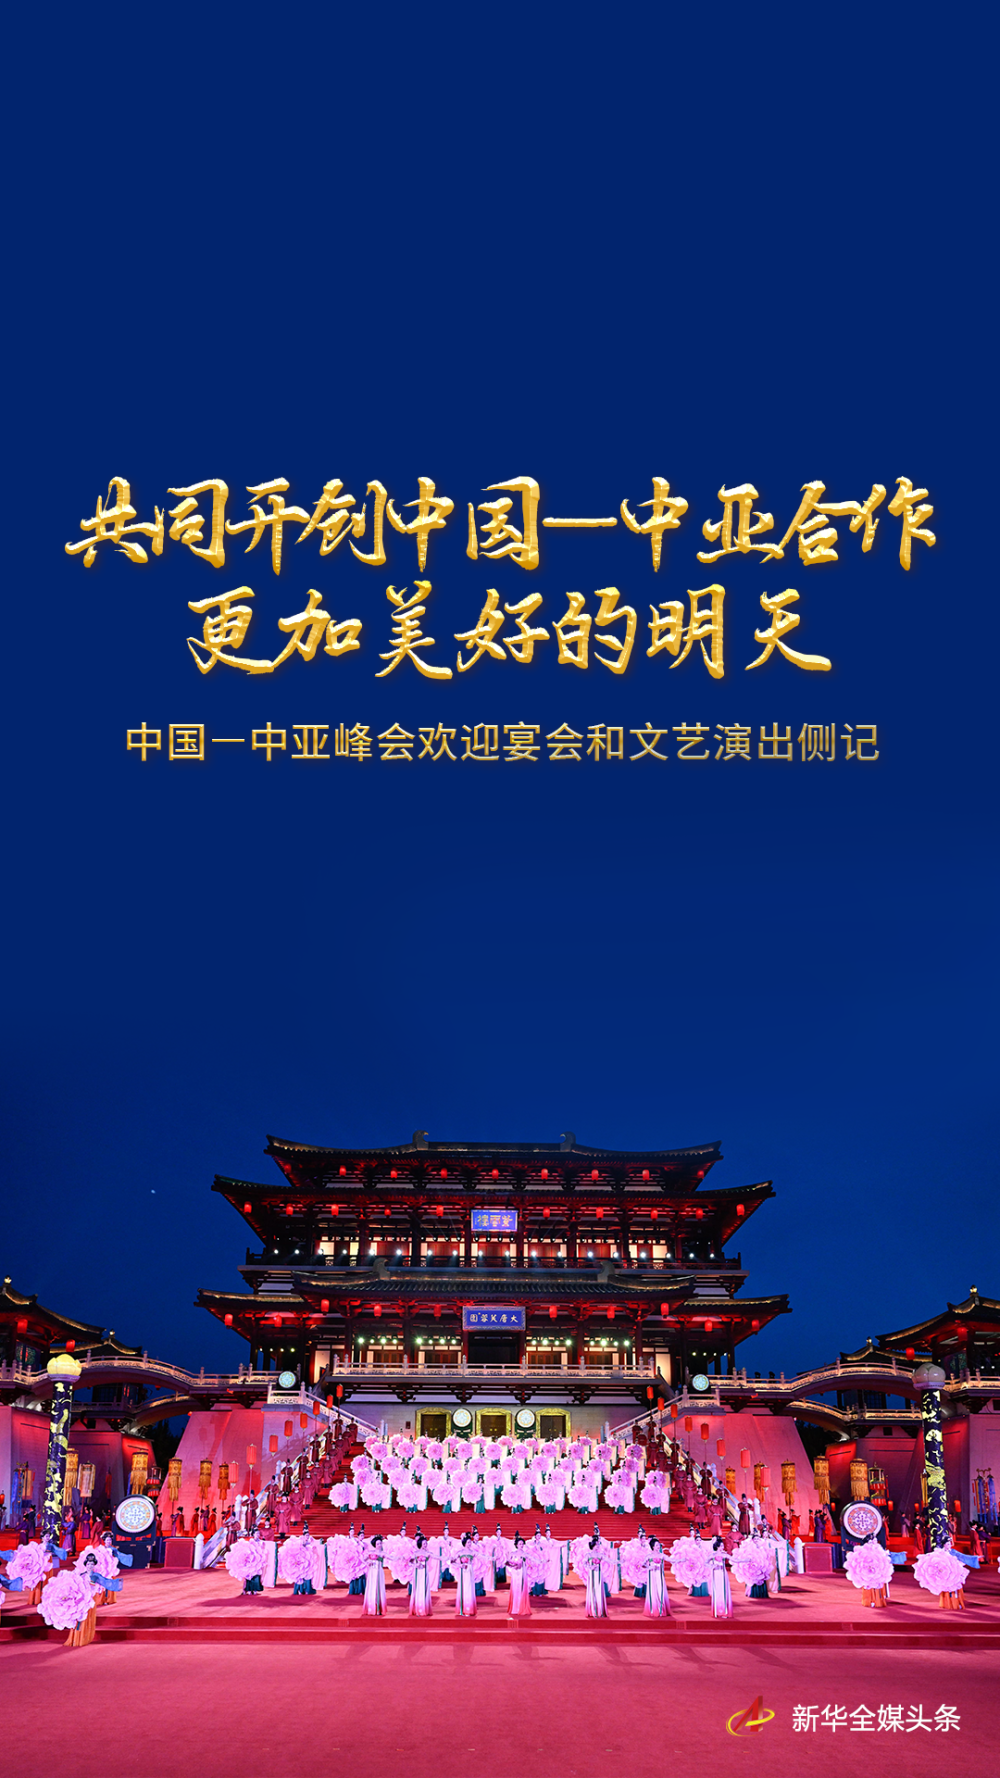 共同开创中国—中亚合作更加美好的明天——中国—中亚峰会欢迎宴会和文艺演出侧记 1